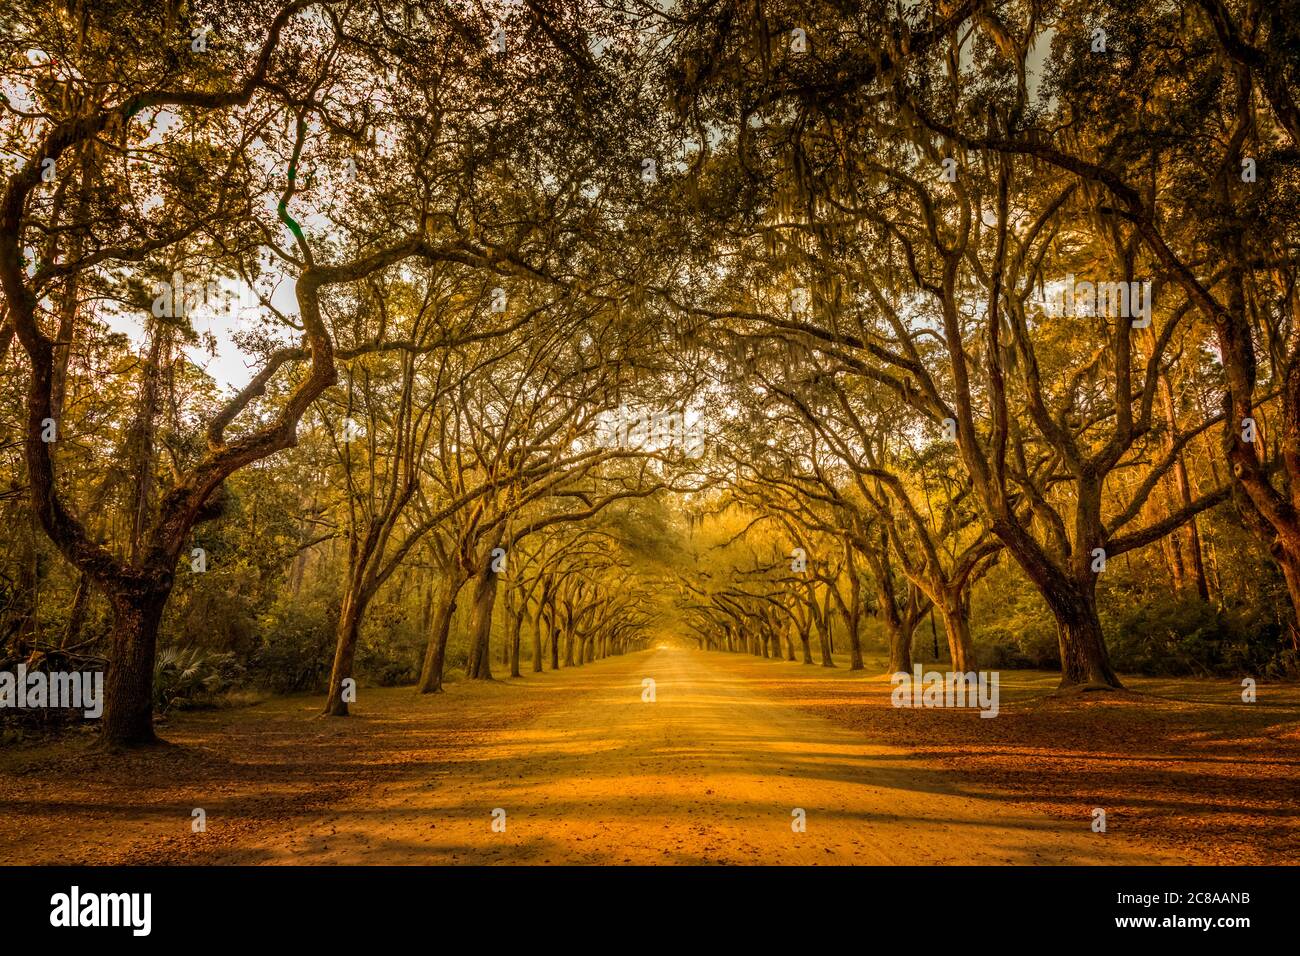 Ein atemberaubender, langer Weg gesäumt von alten, lebenden Eichen, die mit spanischem Moos bedeckt sind, Savannah Georgia Stockfoto